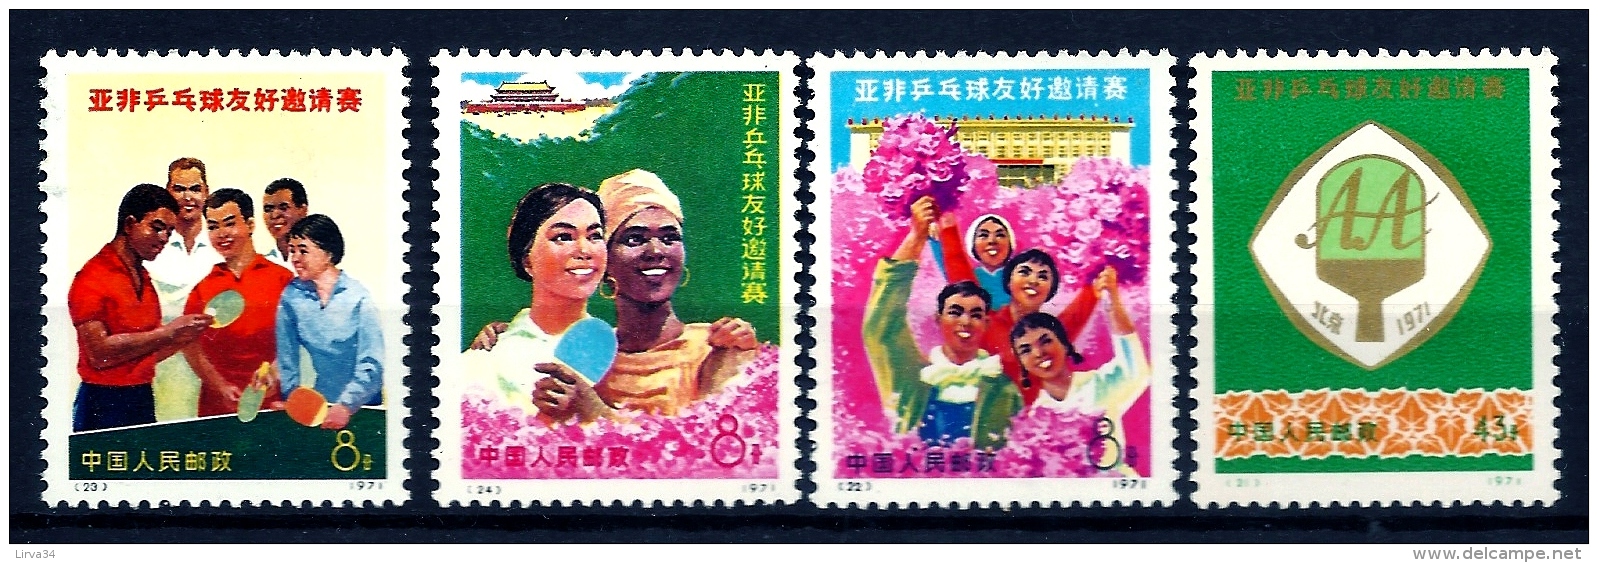 CHINA- SÉRIE COMPLETE DE 4 TIMBRES DE CHINE-  RENCONTRE AFRIQUE- N° 1837 à 1840-  NEUFS** LUXE 1971-  COTE 180 E. - Unused Stamps